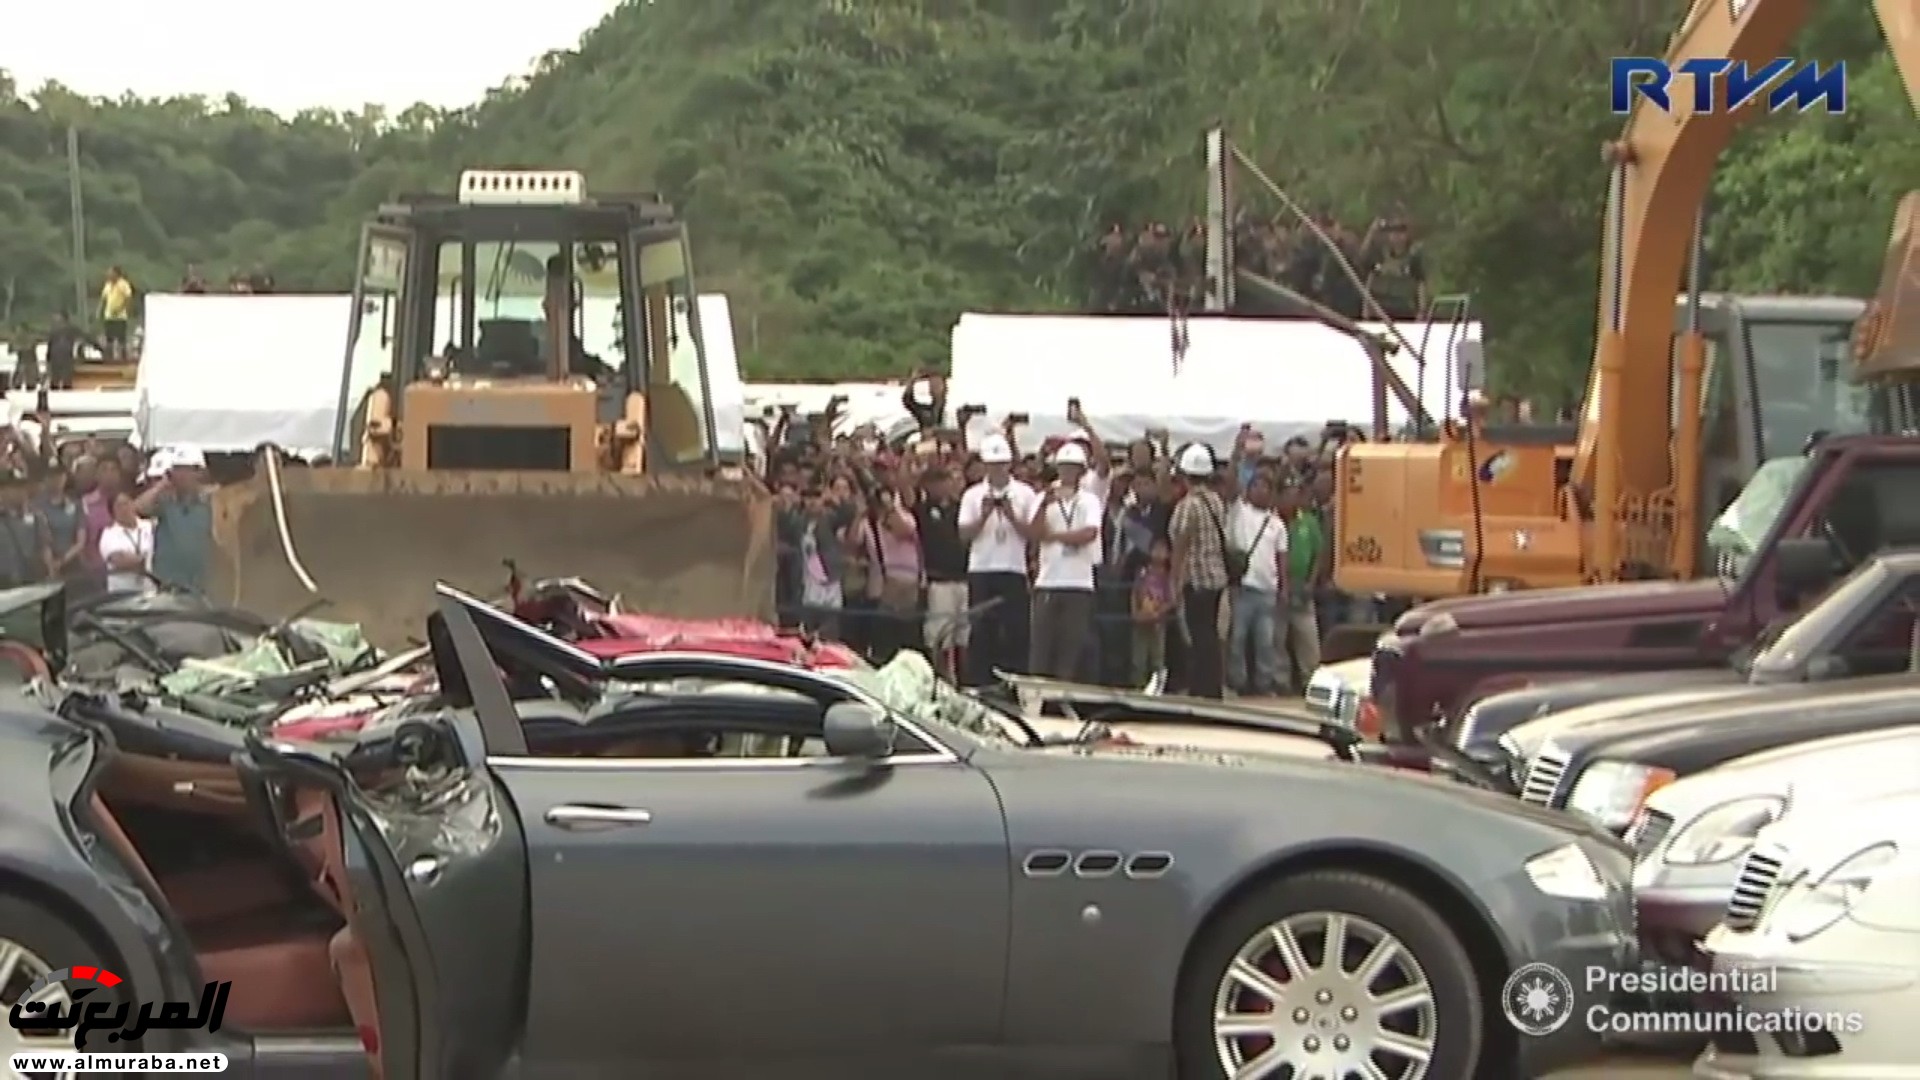 الحكومة الفلبينية تدمر 14 سيارة نادرة بقيمة 2 مليار ريال 36